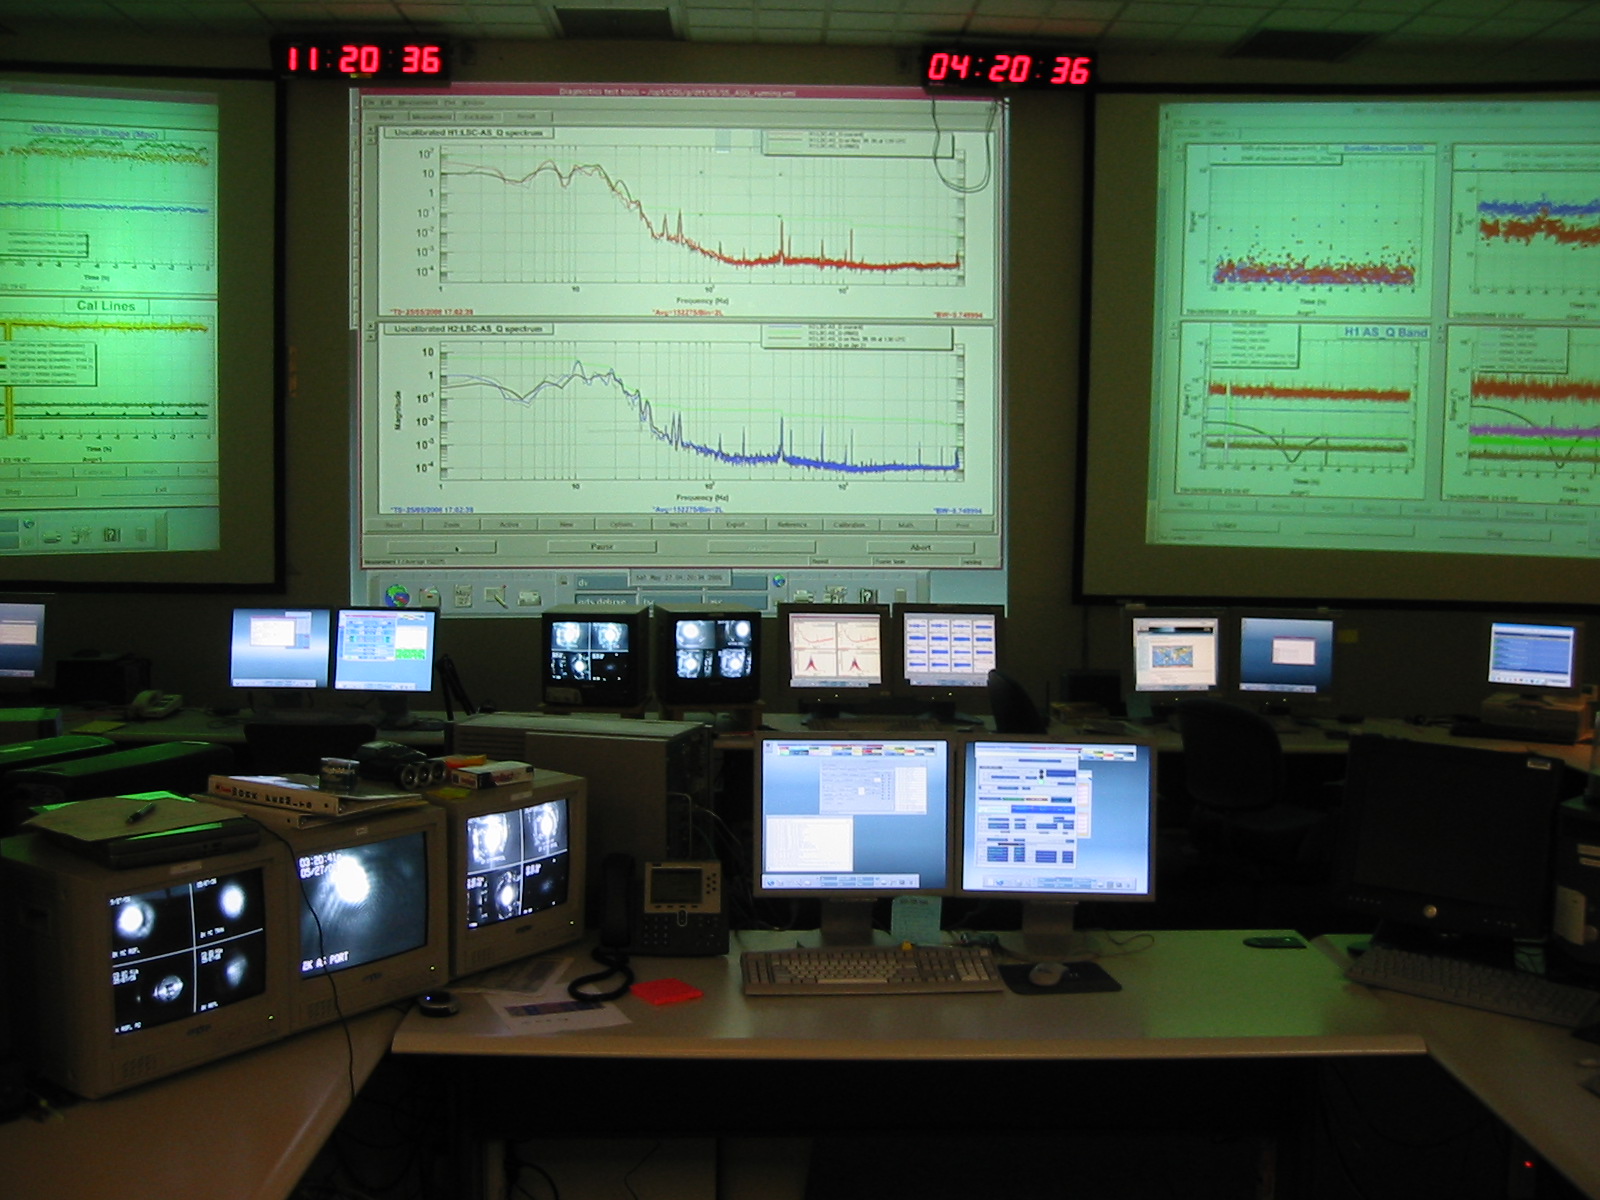 Các chuyên gia cũng đưa ra dự đoán về sự kiện khoa học nổi bật liên quan đến các chương trình lớn như LIGO hay LISA